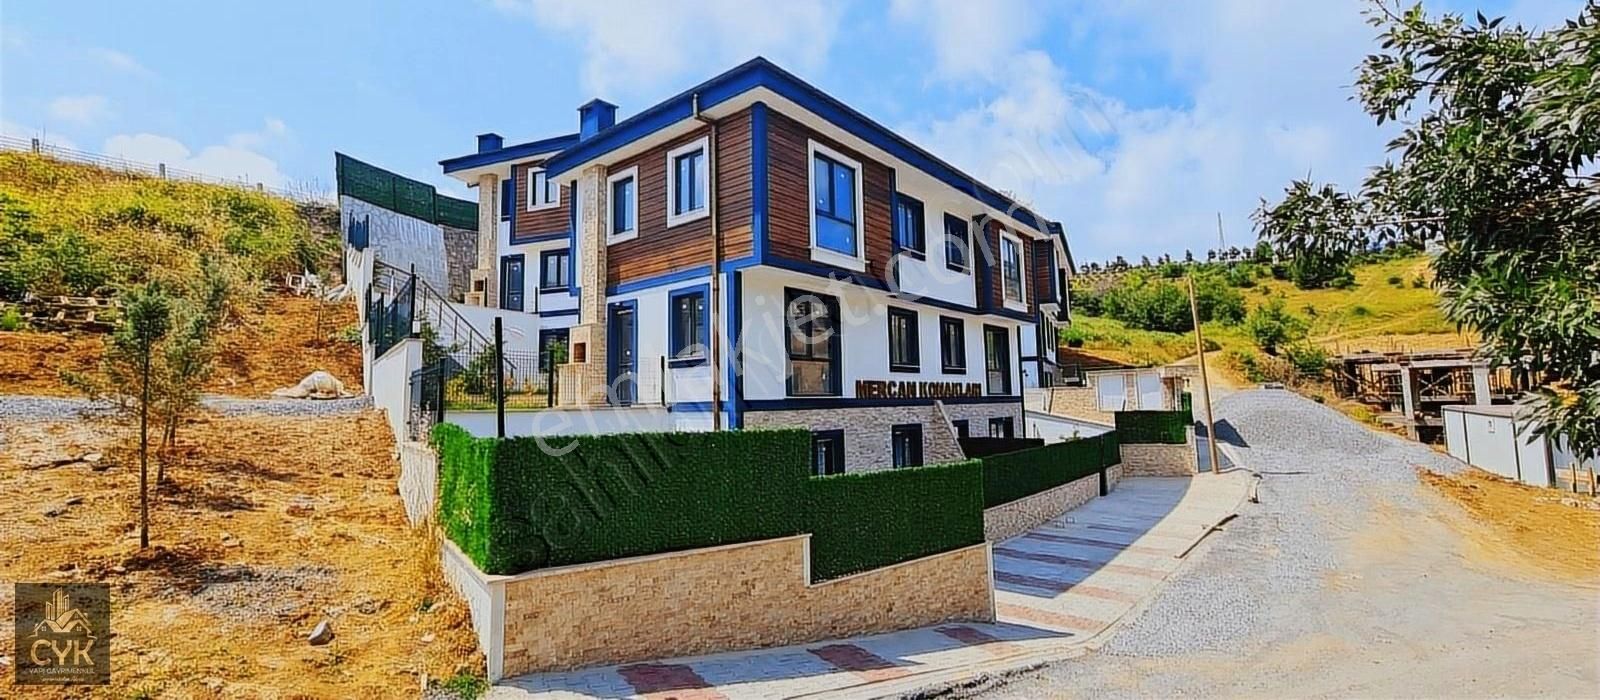 Şile Çavuş Satılık Villa CYK GAYRİMENKULDEN MUHTEŞEM SIFIR TRIBLEX 4+1 VİLLA MERKEZDE